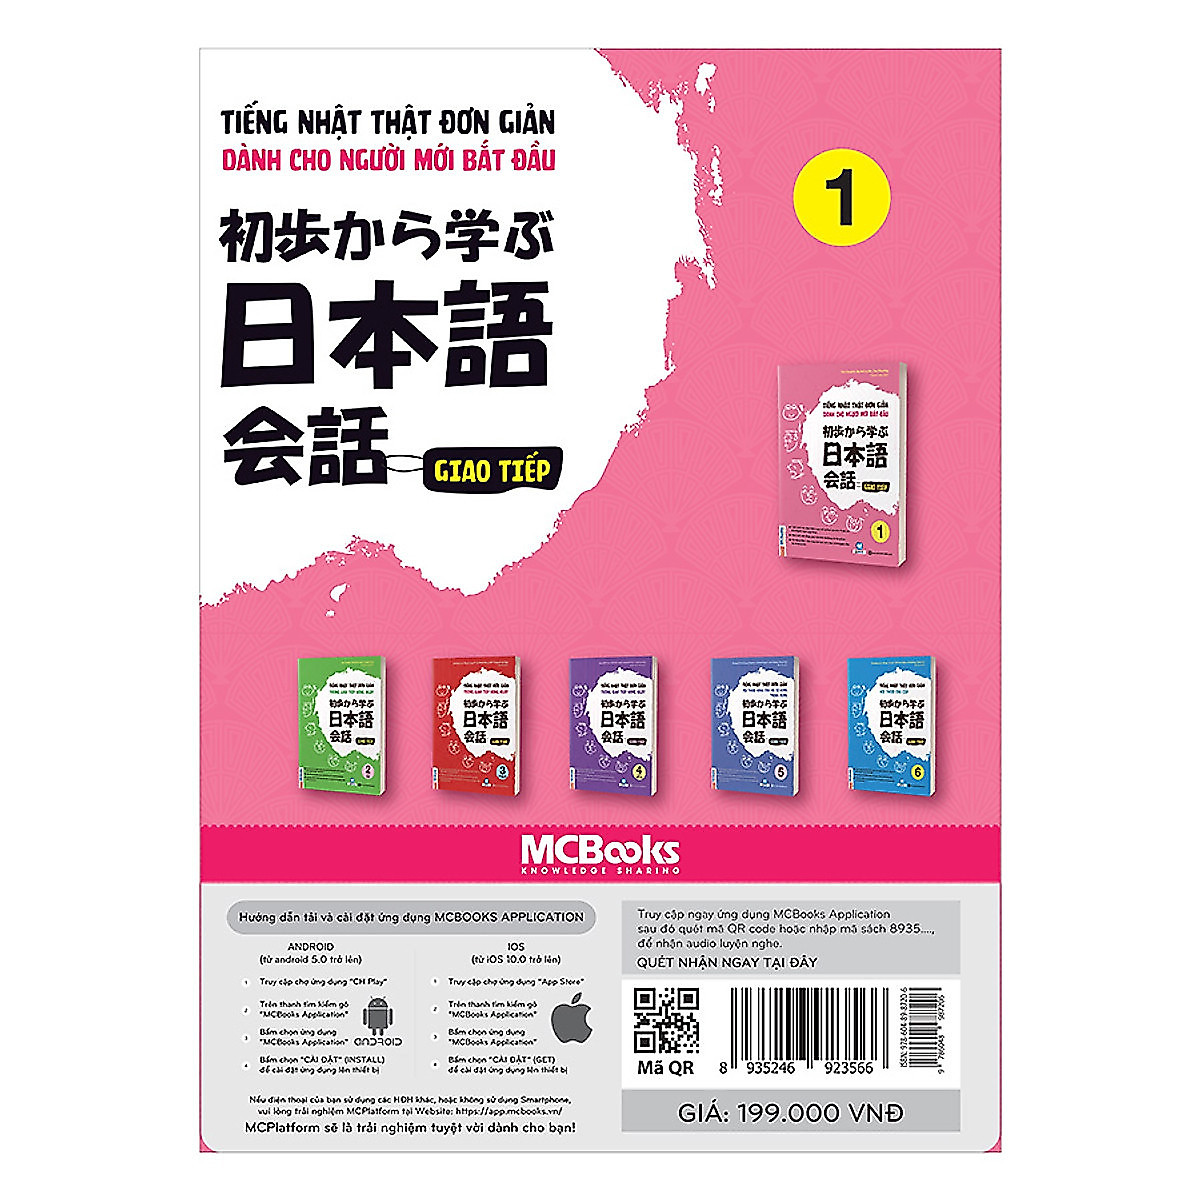 Trọn Bộ 3 Cuốn Tiếng Nhật Thật Đơn Giản Dành Cho Người Mới Bắt Đầu: Giao Tiếp 1 + Giao Tiếp Sơ Cấp 2 + Giao Tiếp Sơ Trung Cấp 3 (Học Cùng App MCBooks) – MinhAnBooks